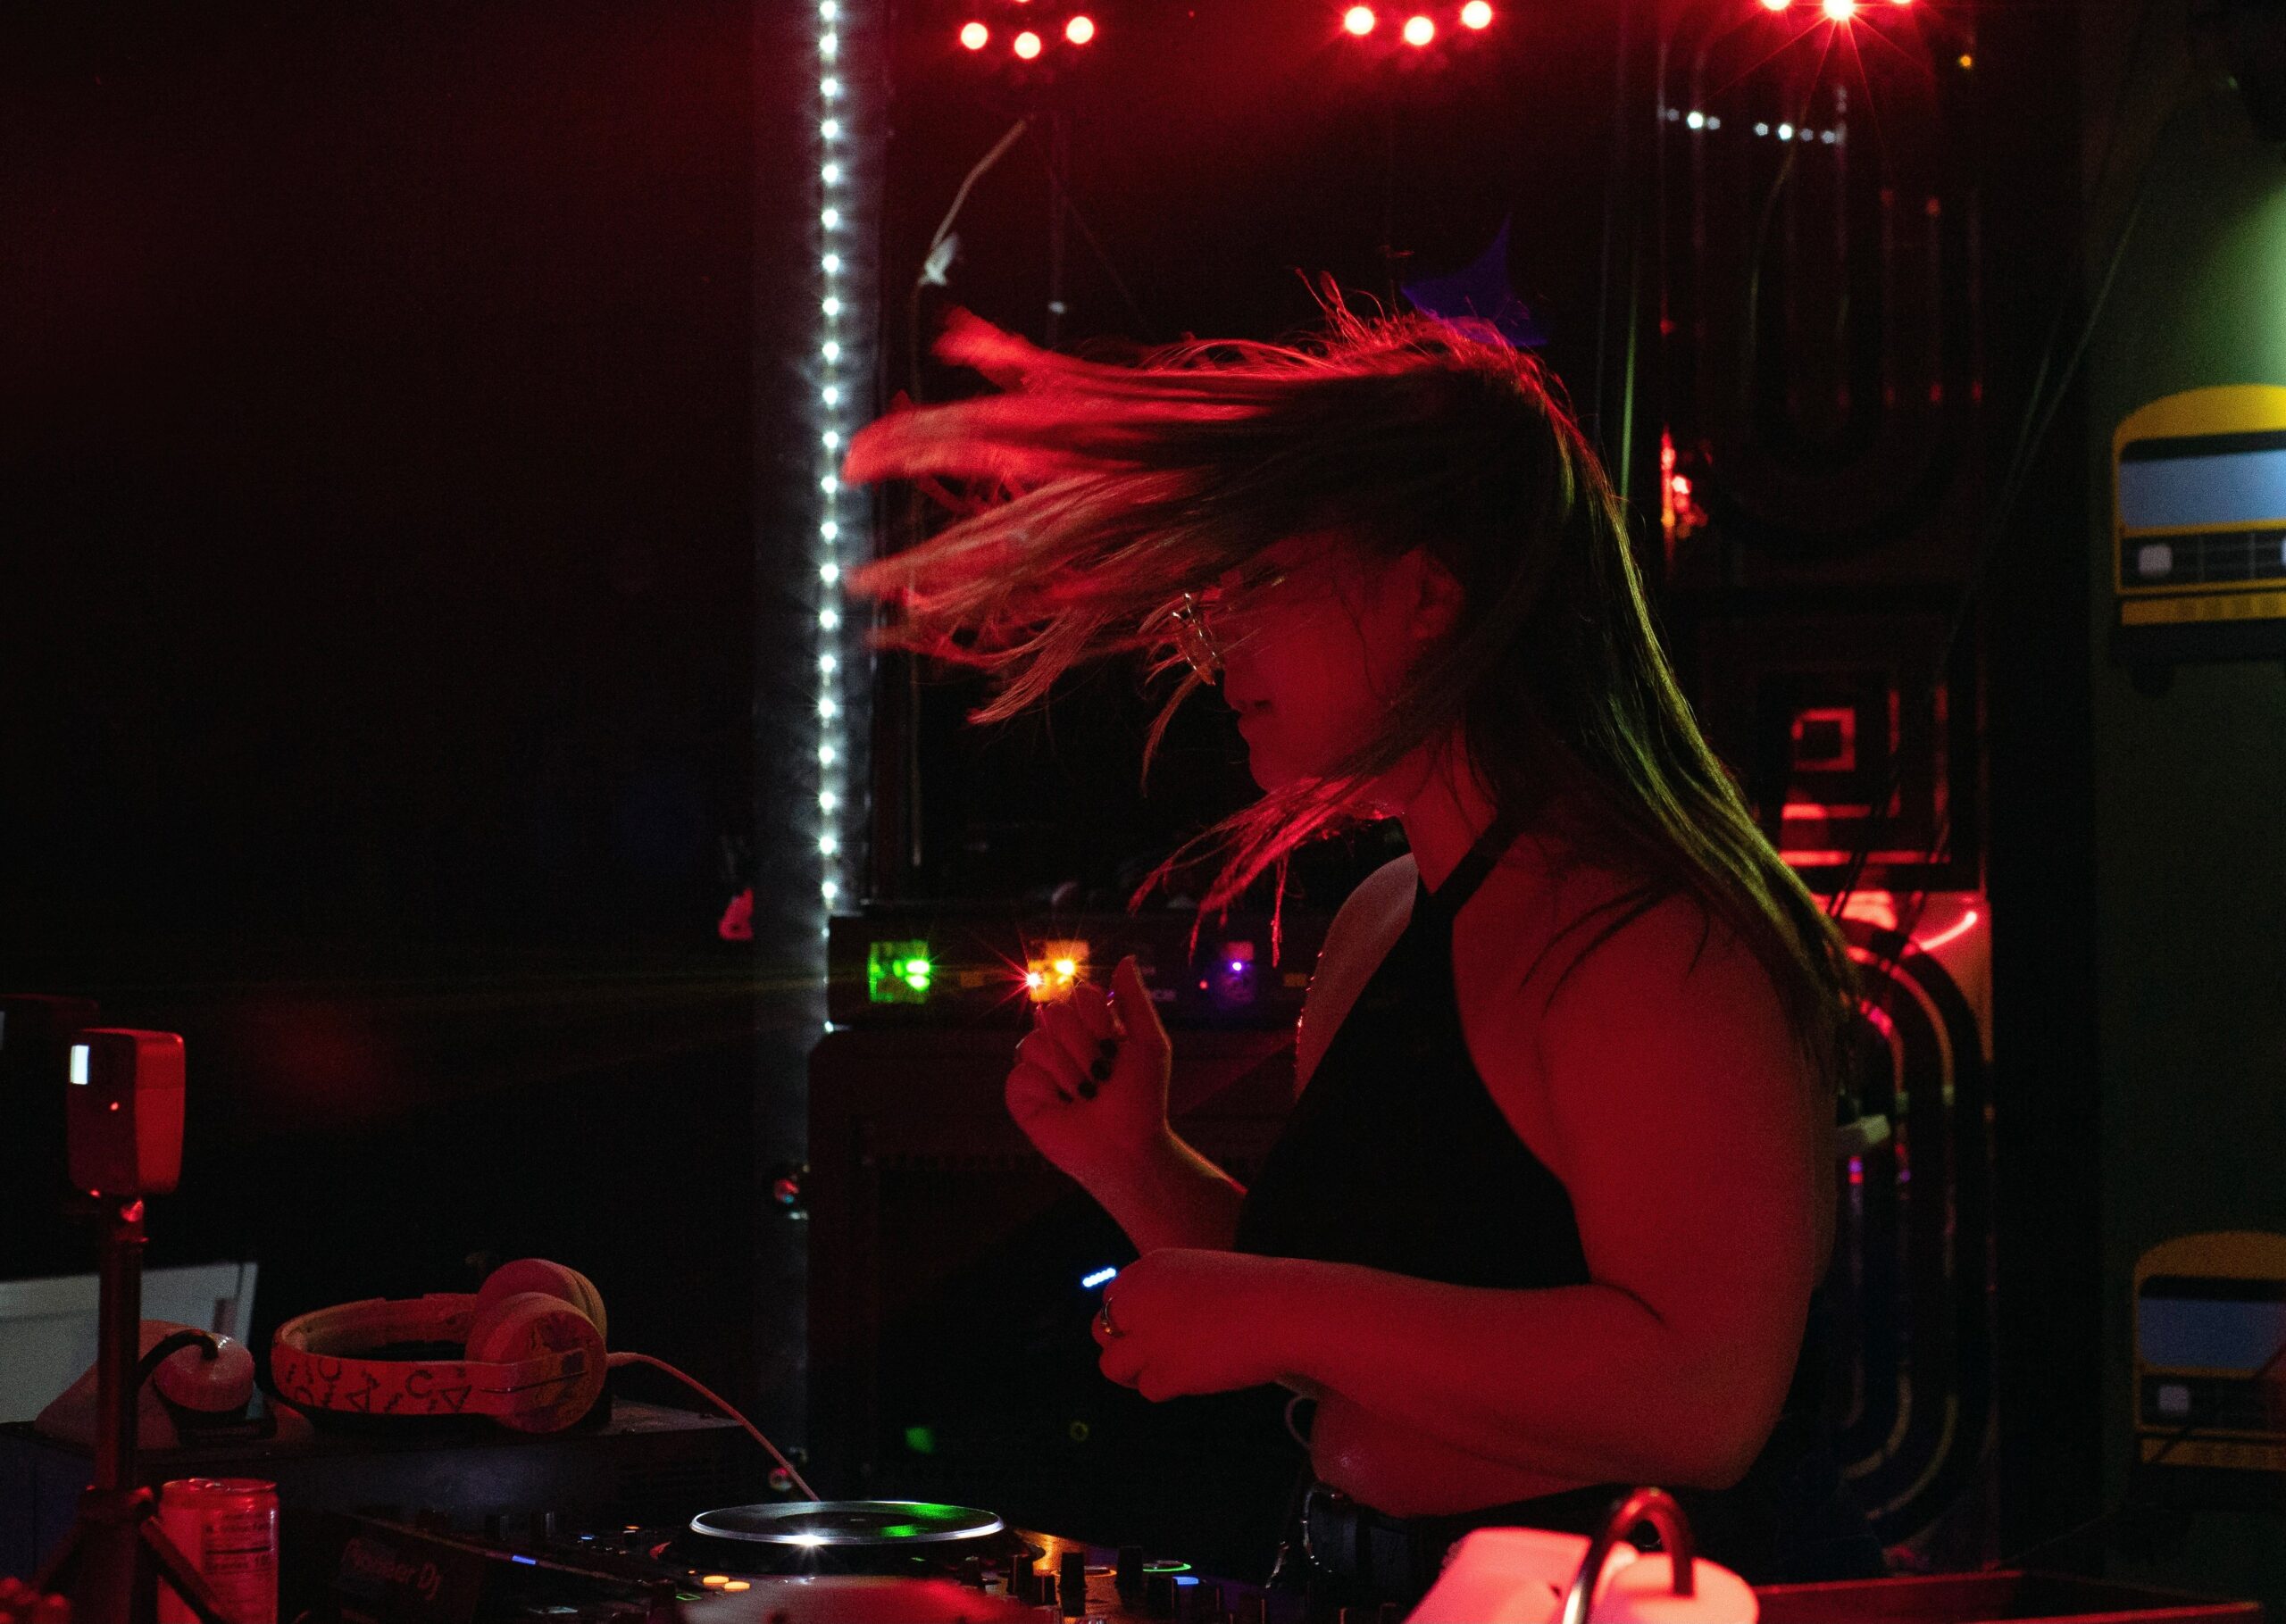 Claire DeRosa dances behind a DJ table.